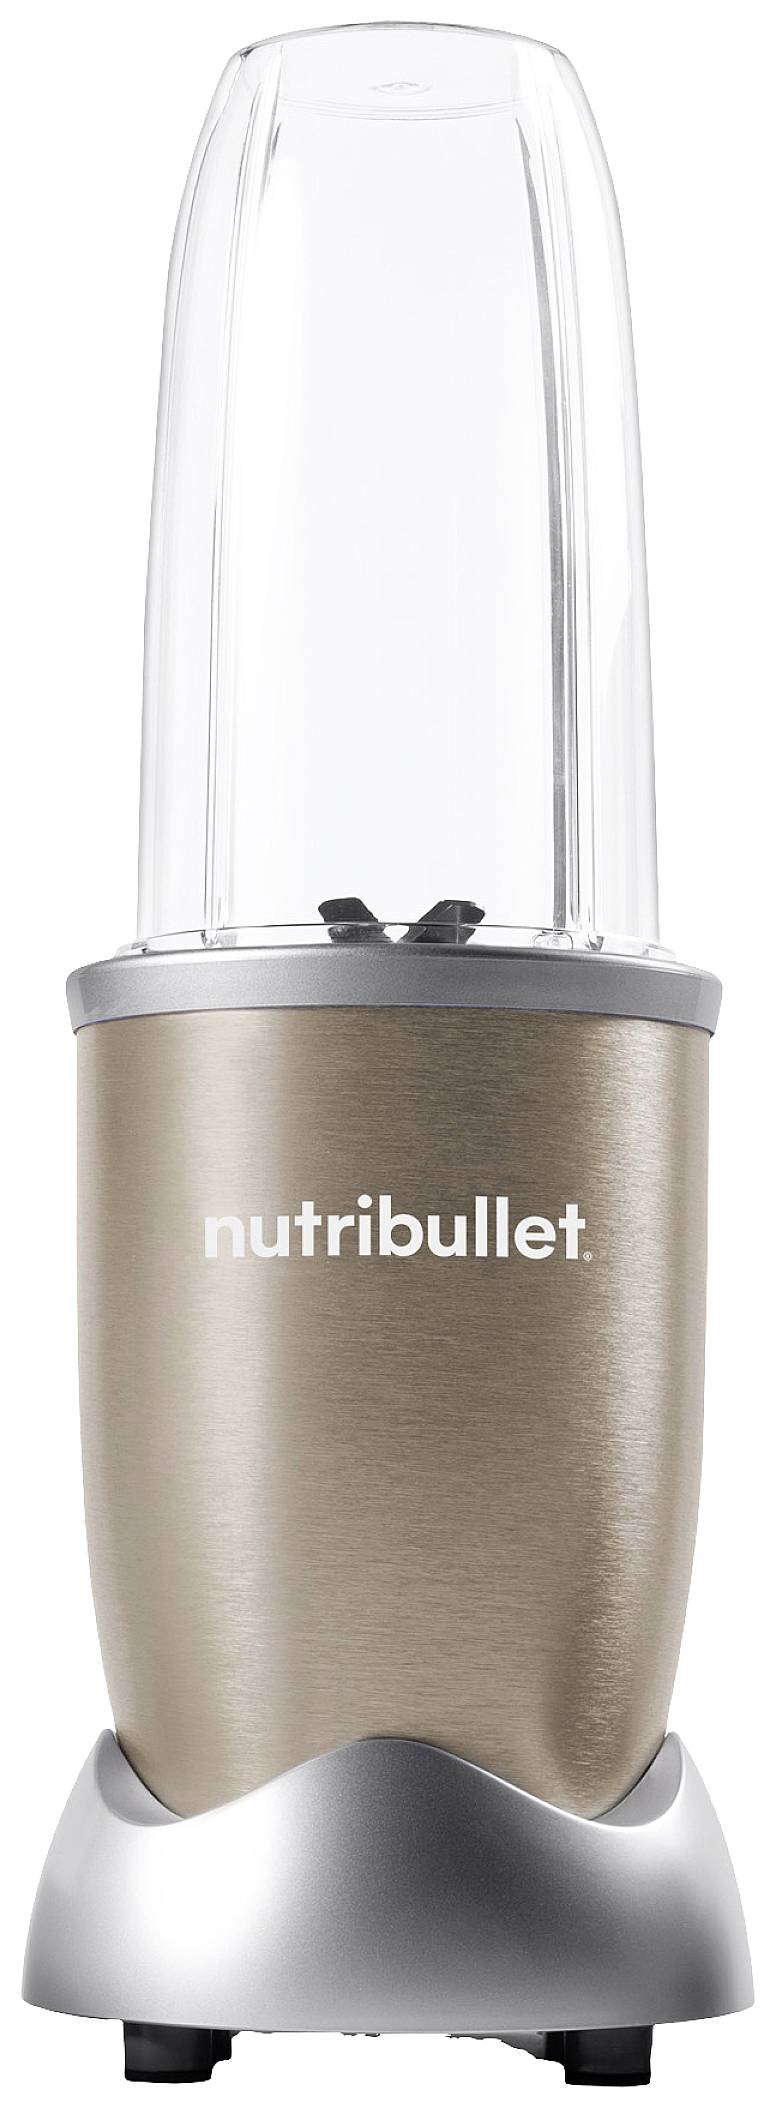 storhedsvanvid følelse bliver nervøs NUTRiBULLET NB910CP Blender 900 W BPA-free Champagne | Conrad.com